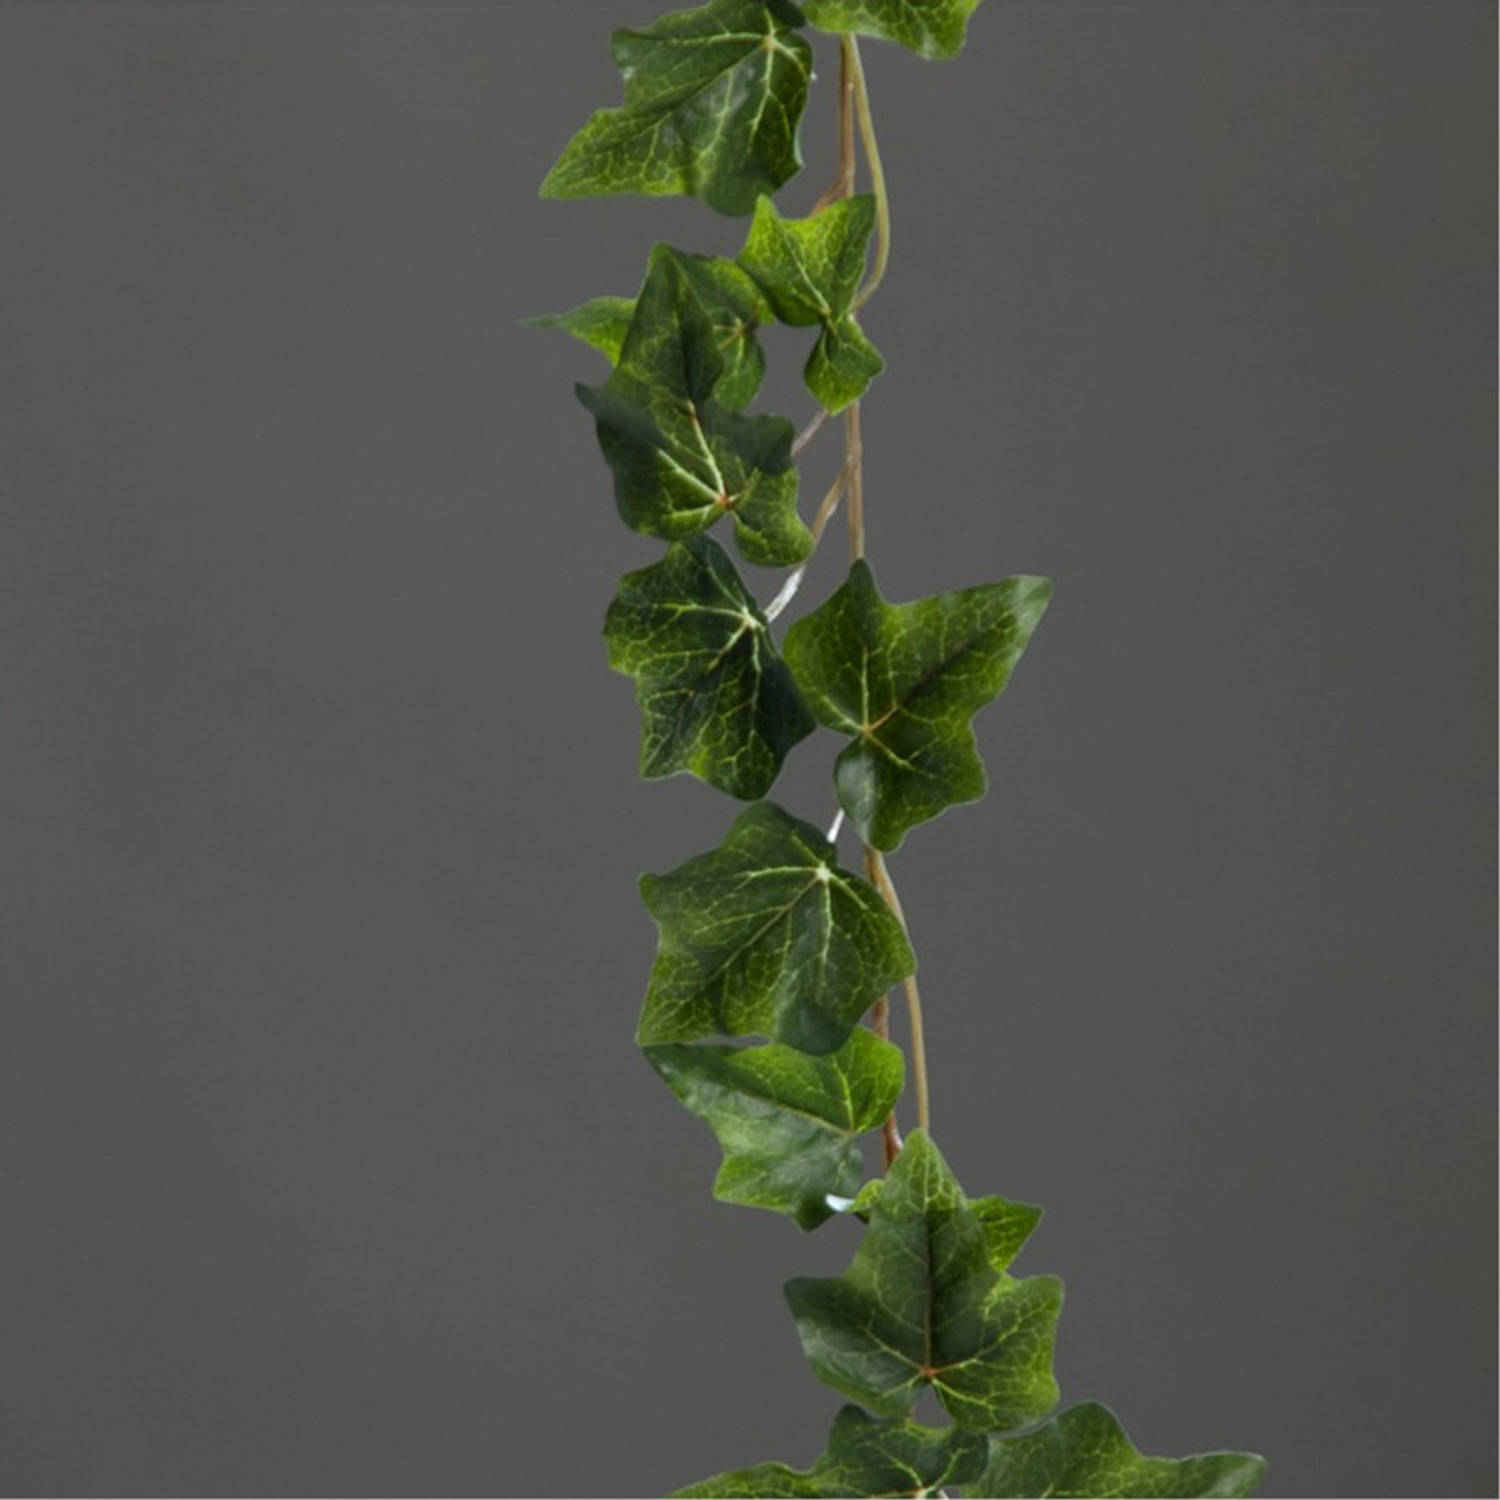 Chaks Klimop kunstplant slinger - 180 cm - groen - Kunstplanten/nepplanten - Hangplanten